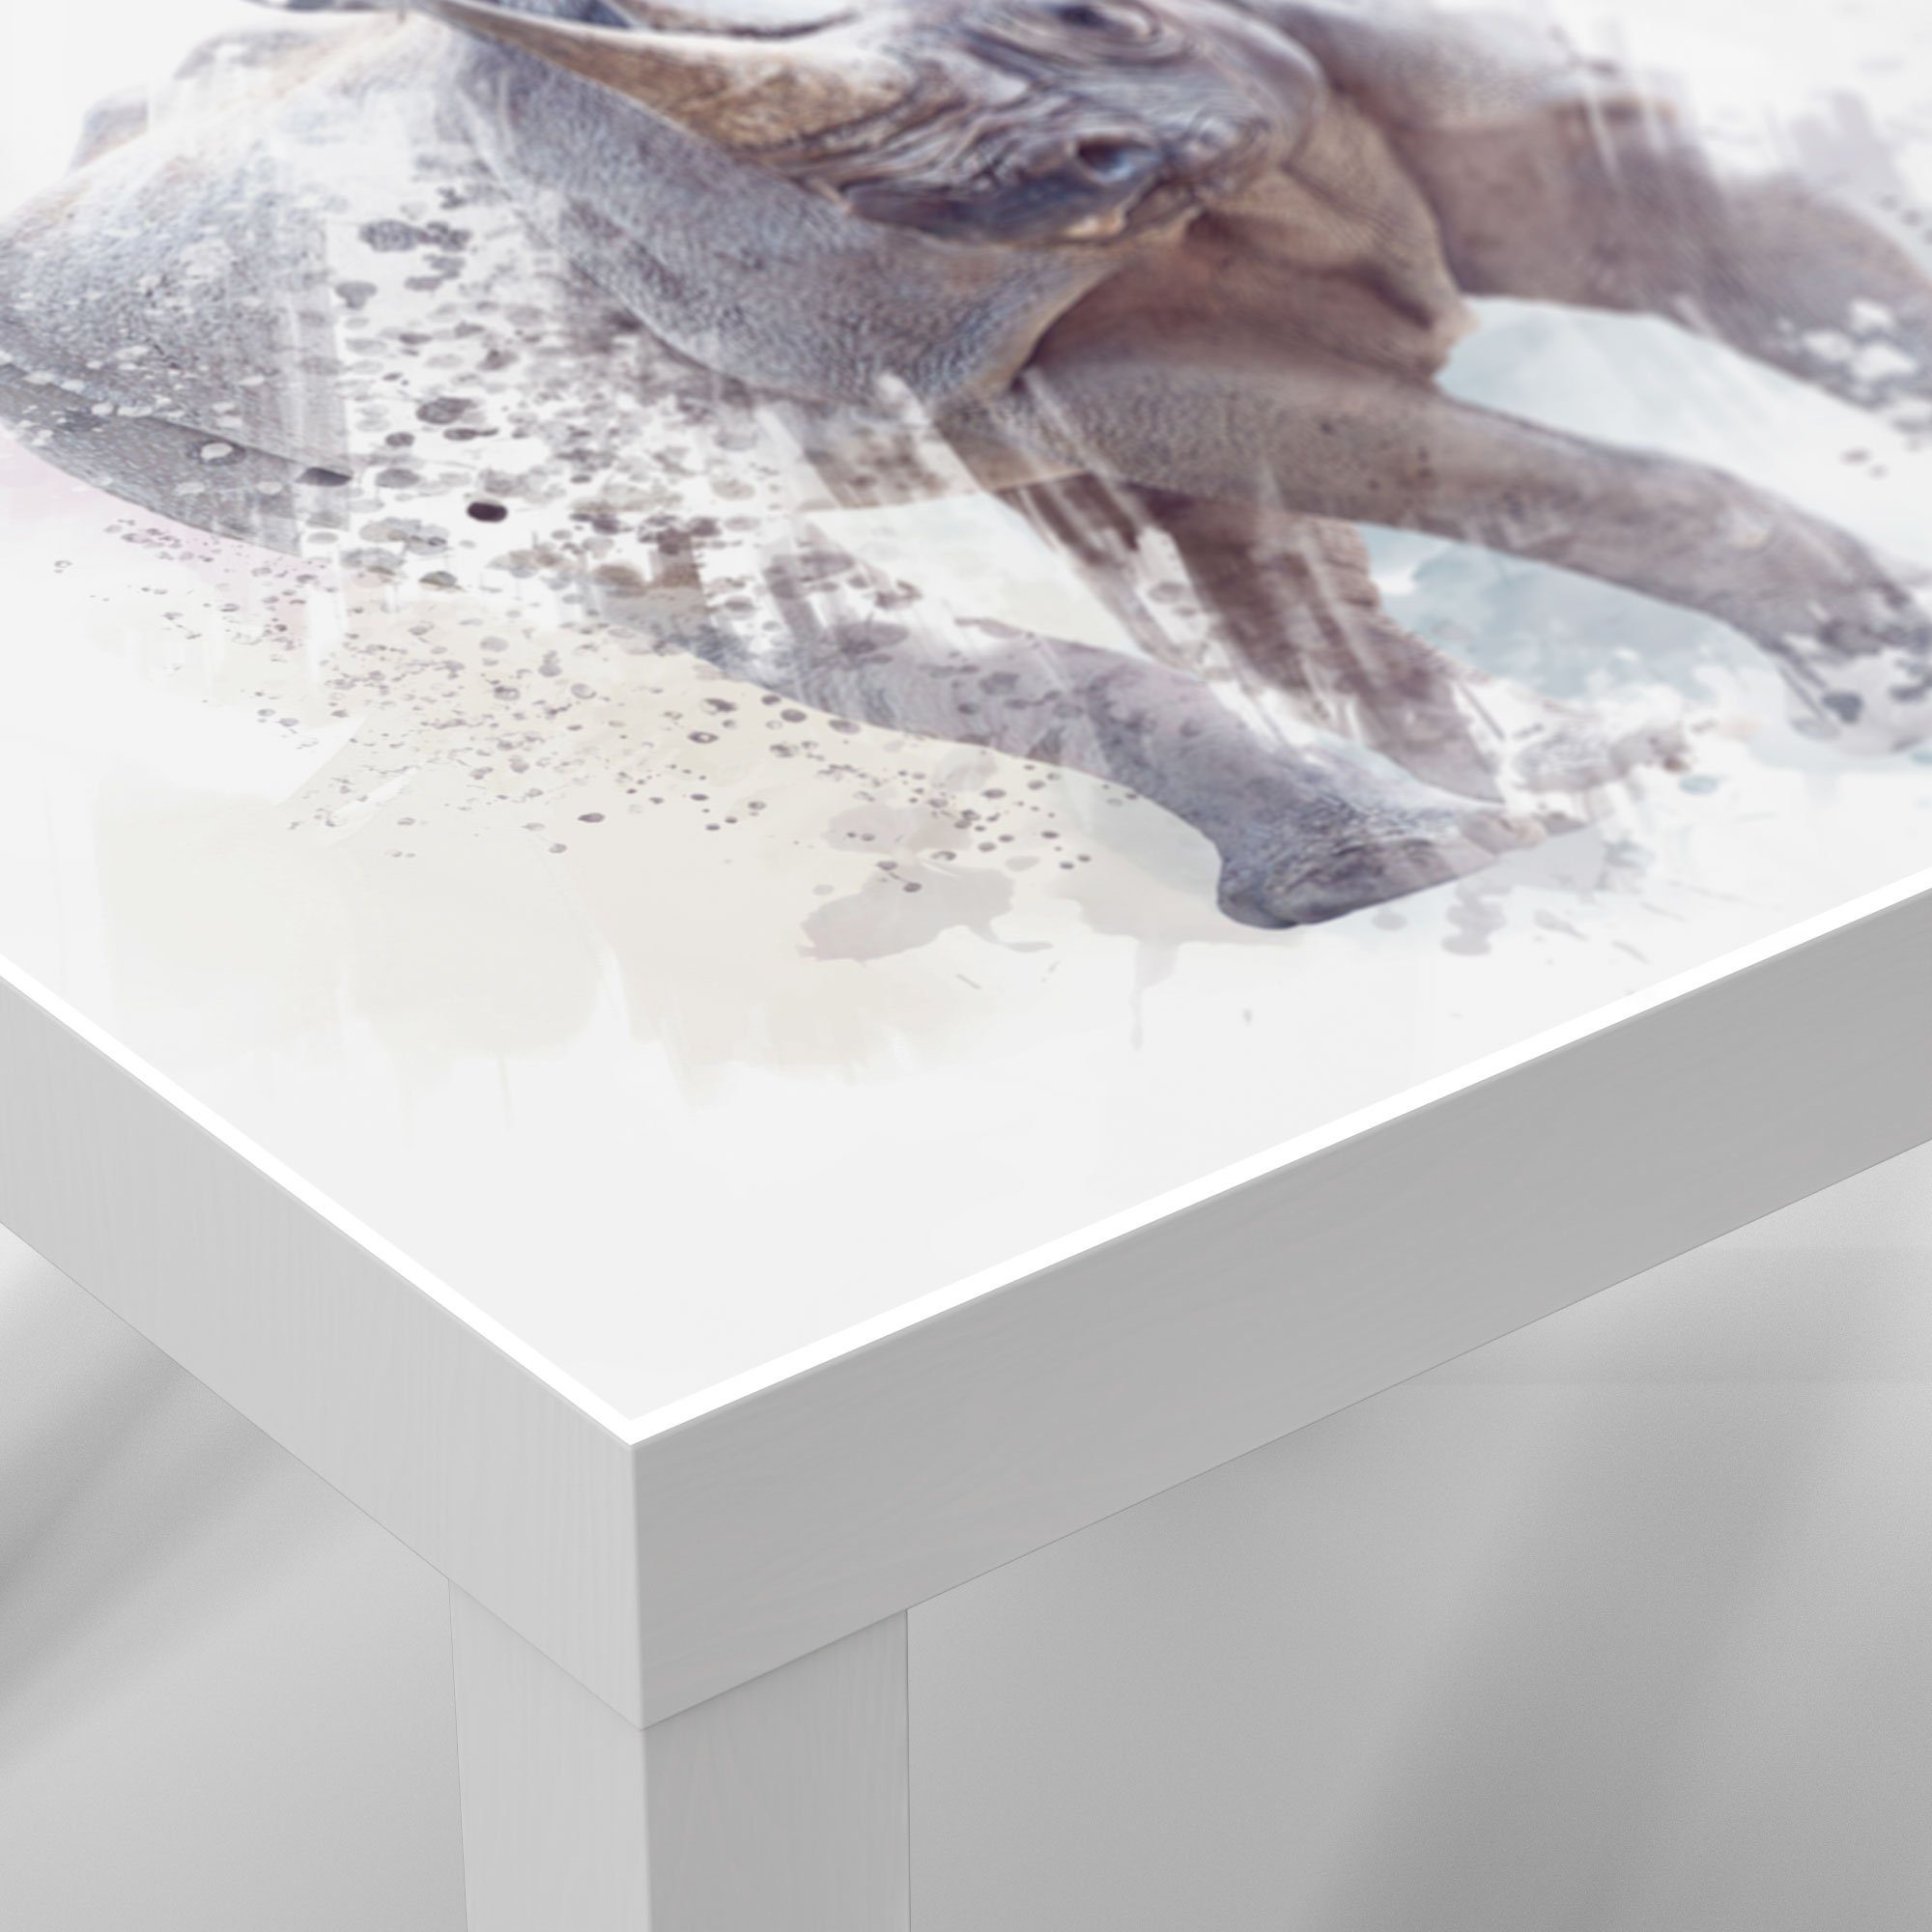 'Nashorn Couchtisch Glastisch Aquarell', Beistelltisch modern DEQORI Weiß Glas in